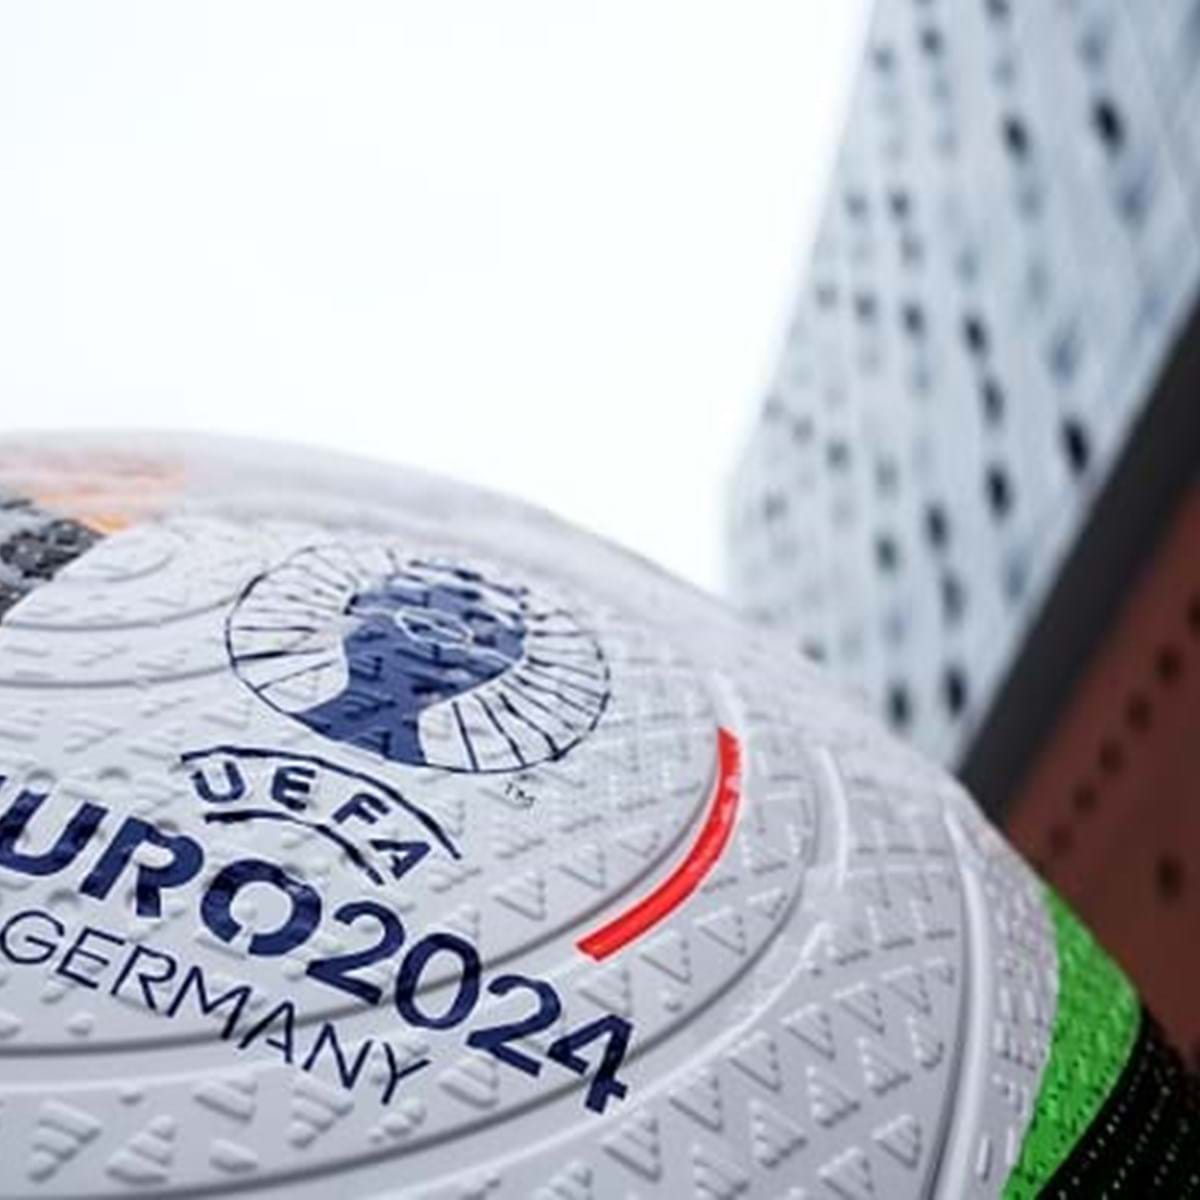 Sport TV garante transmissão dos jogos do Euro 2024